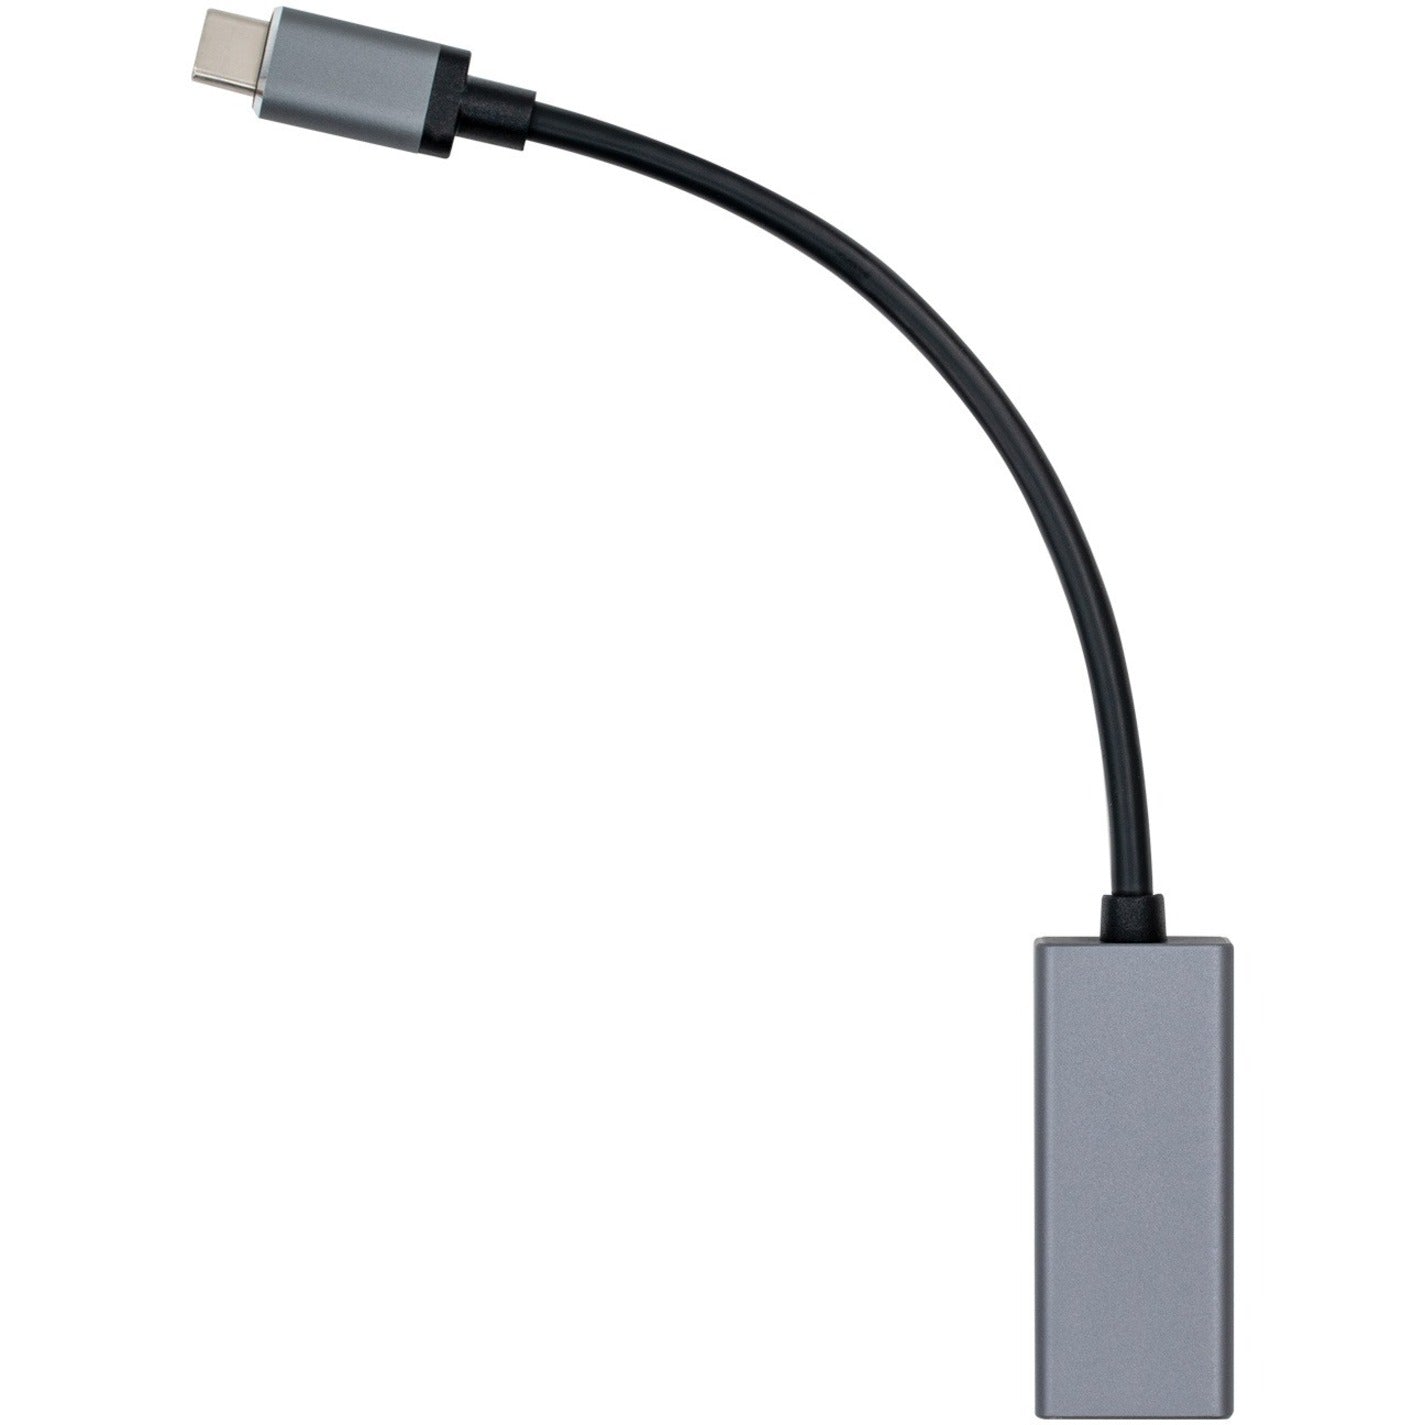 VisionTek 901358 USB-C to Ethernet 1 Gbps Adapter (M/F) Gigabit Ethernet Card